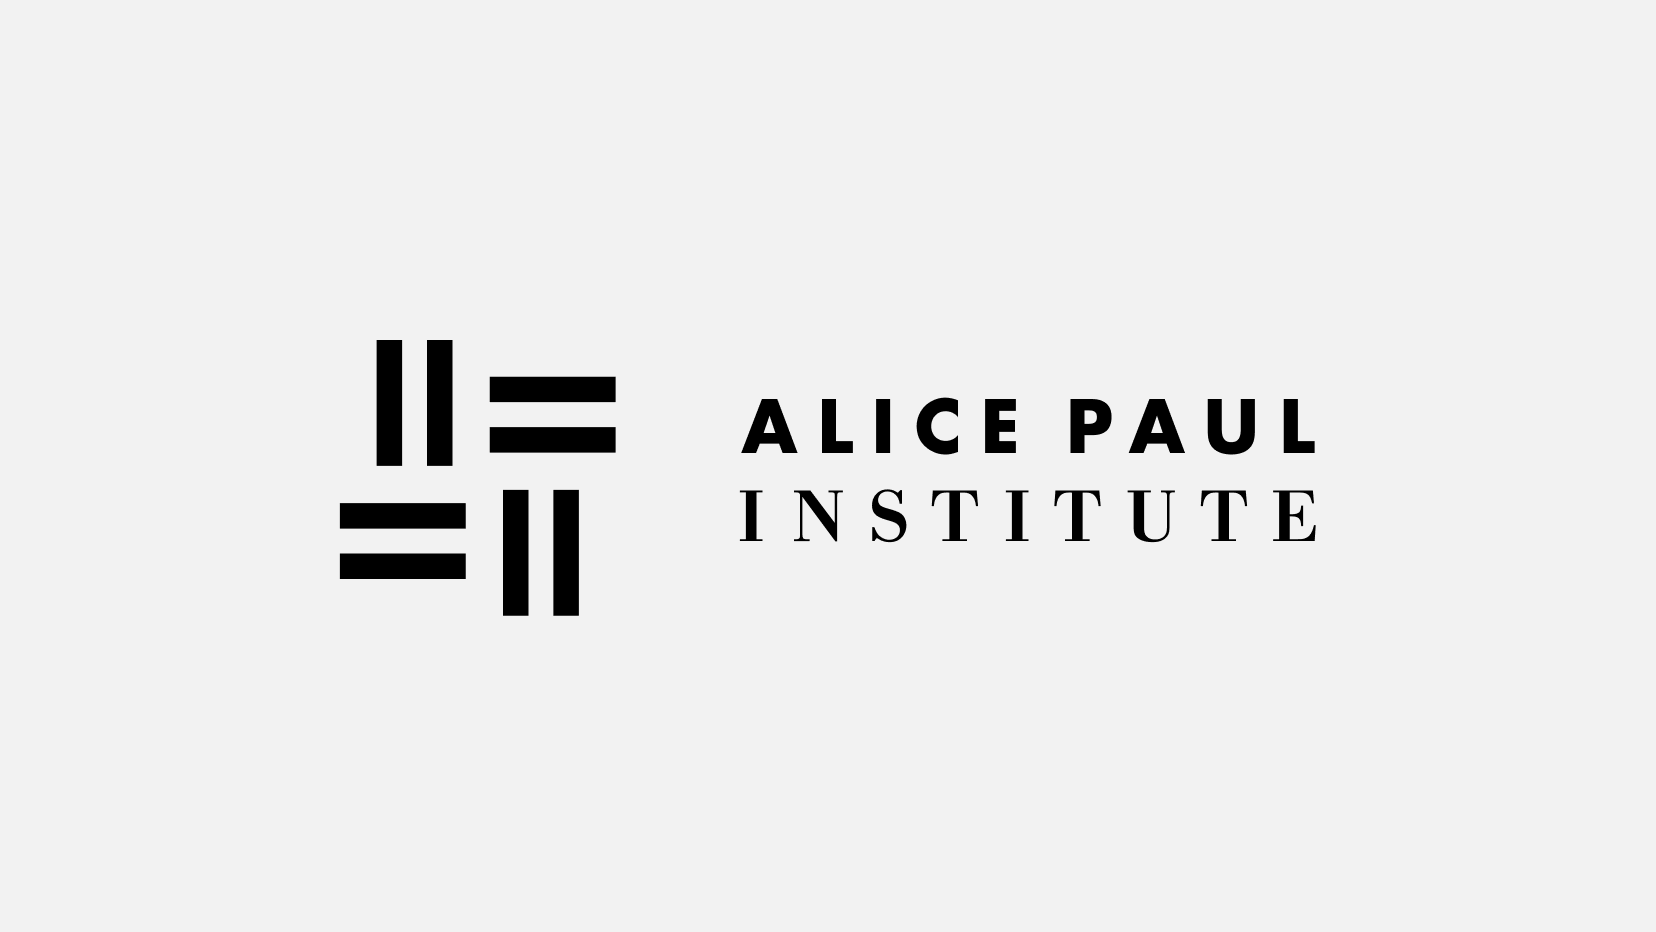 Alice Paul Institute logo